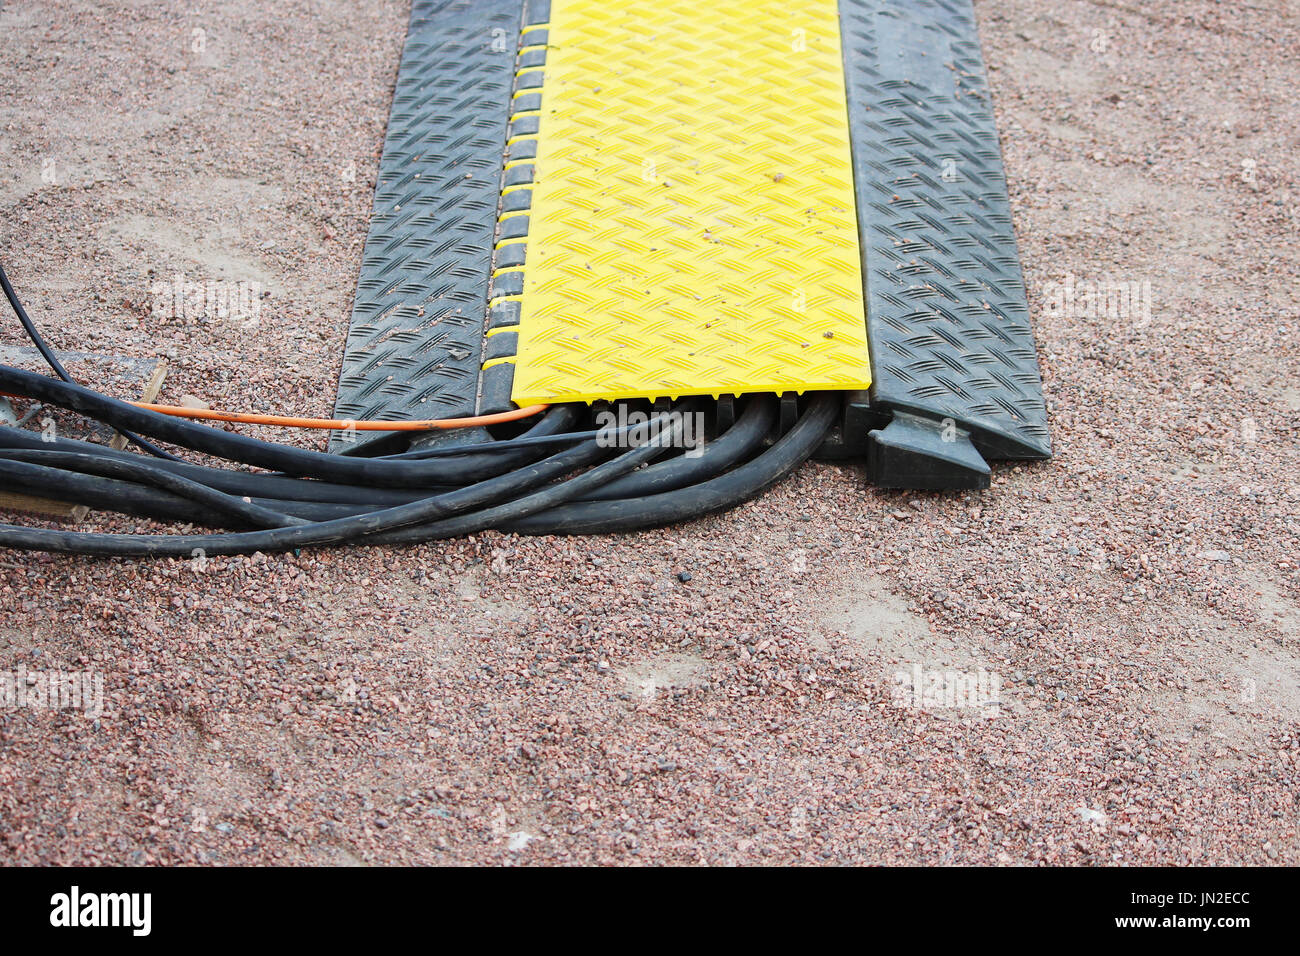 Viele Kabelkanäle mit elektrischen Video Belden Snake Kabel auf dem Boden liegt, während ein outdoor-Event Etage Schutz gelb schwarz Stockfoto